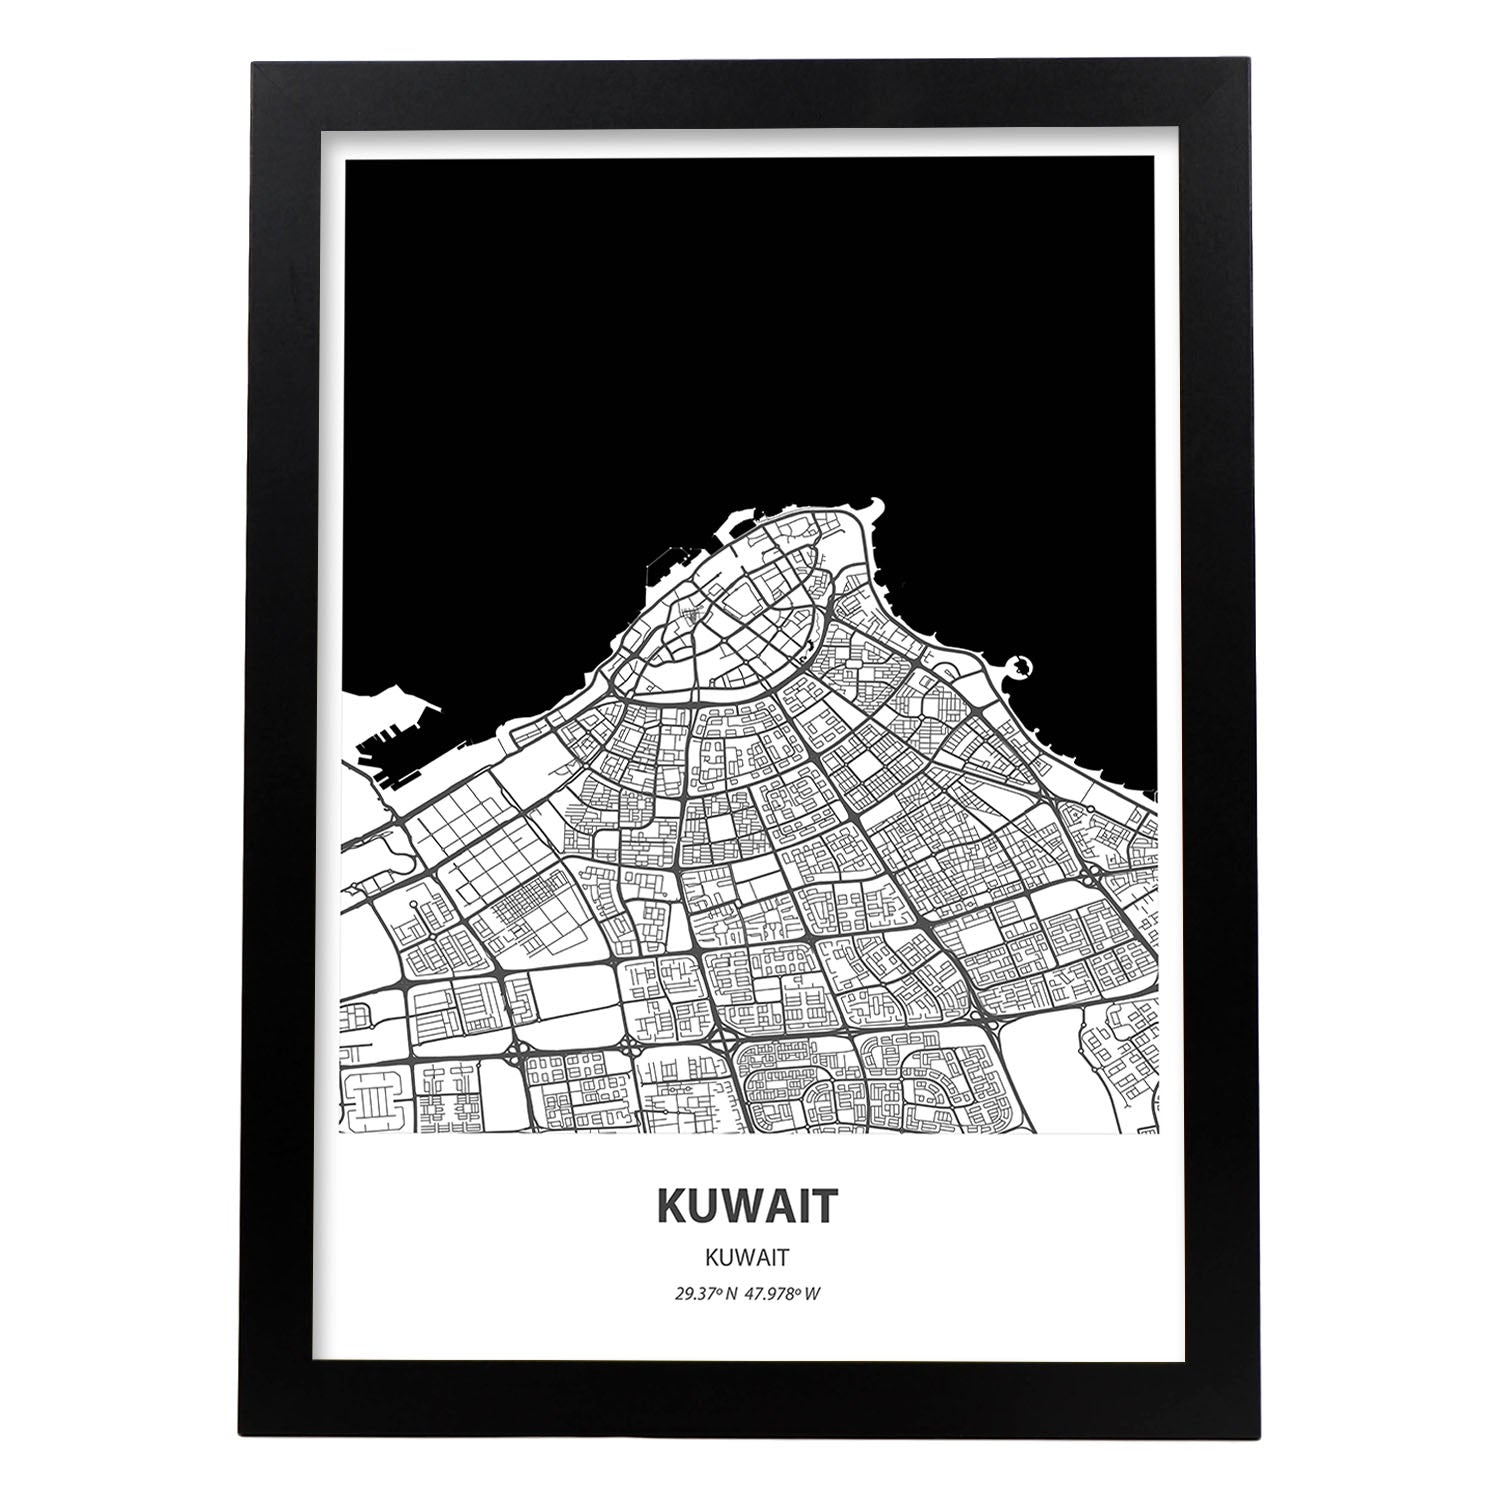 Poster con mapa de Kuwait - Kuwait. Láminas de ciudades de Oriente Medio con mares y ríos en color negro.-Artwork-Nacnic-A3-Marco Negro-Nacnic Estudio SL